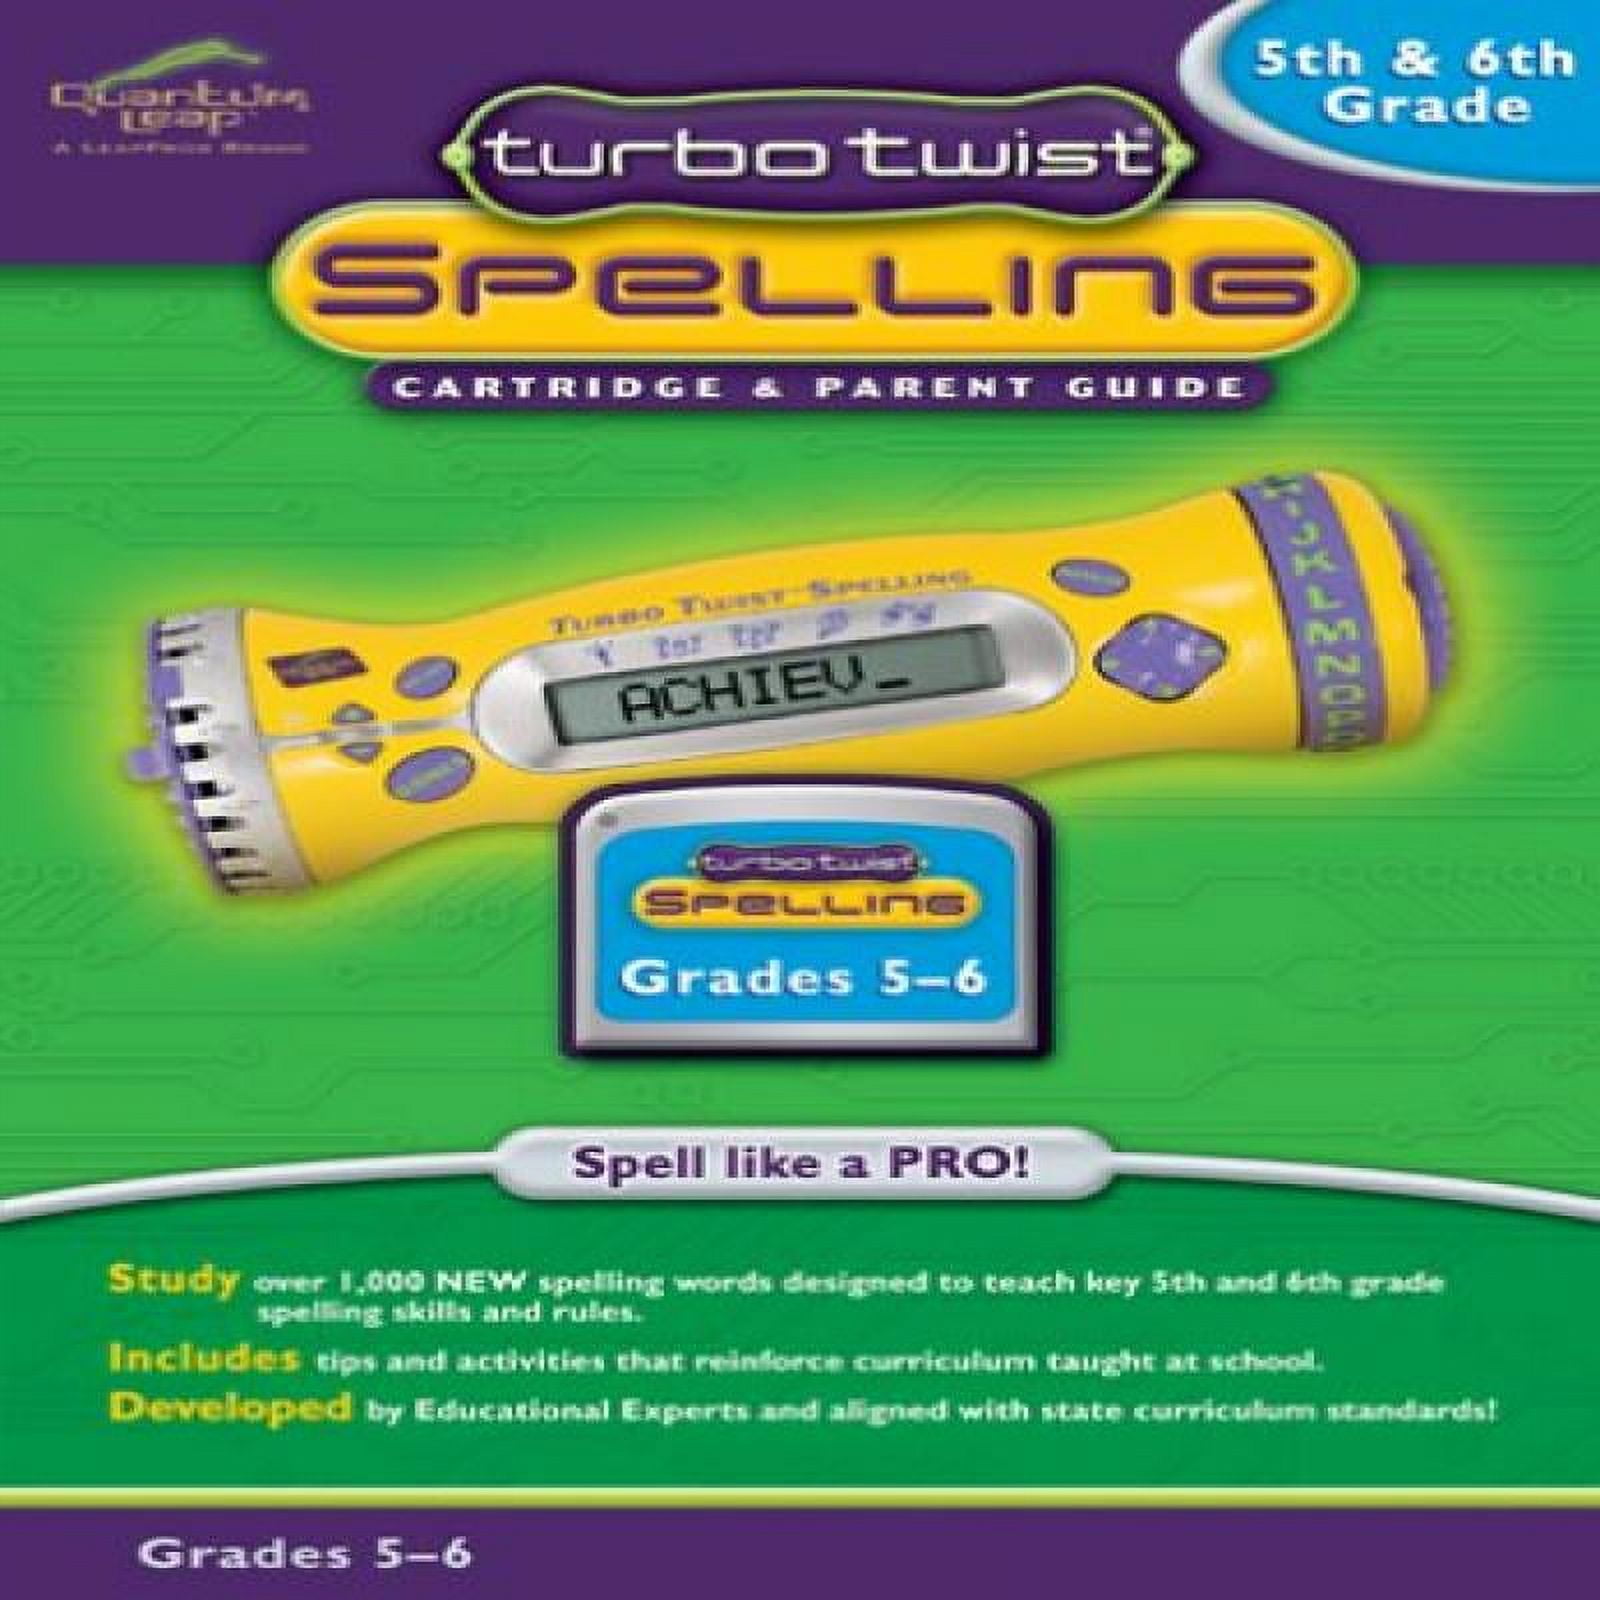 LeapFrog Quantum Leap Turbo Twist Spelling Cartridge & Parent